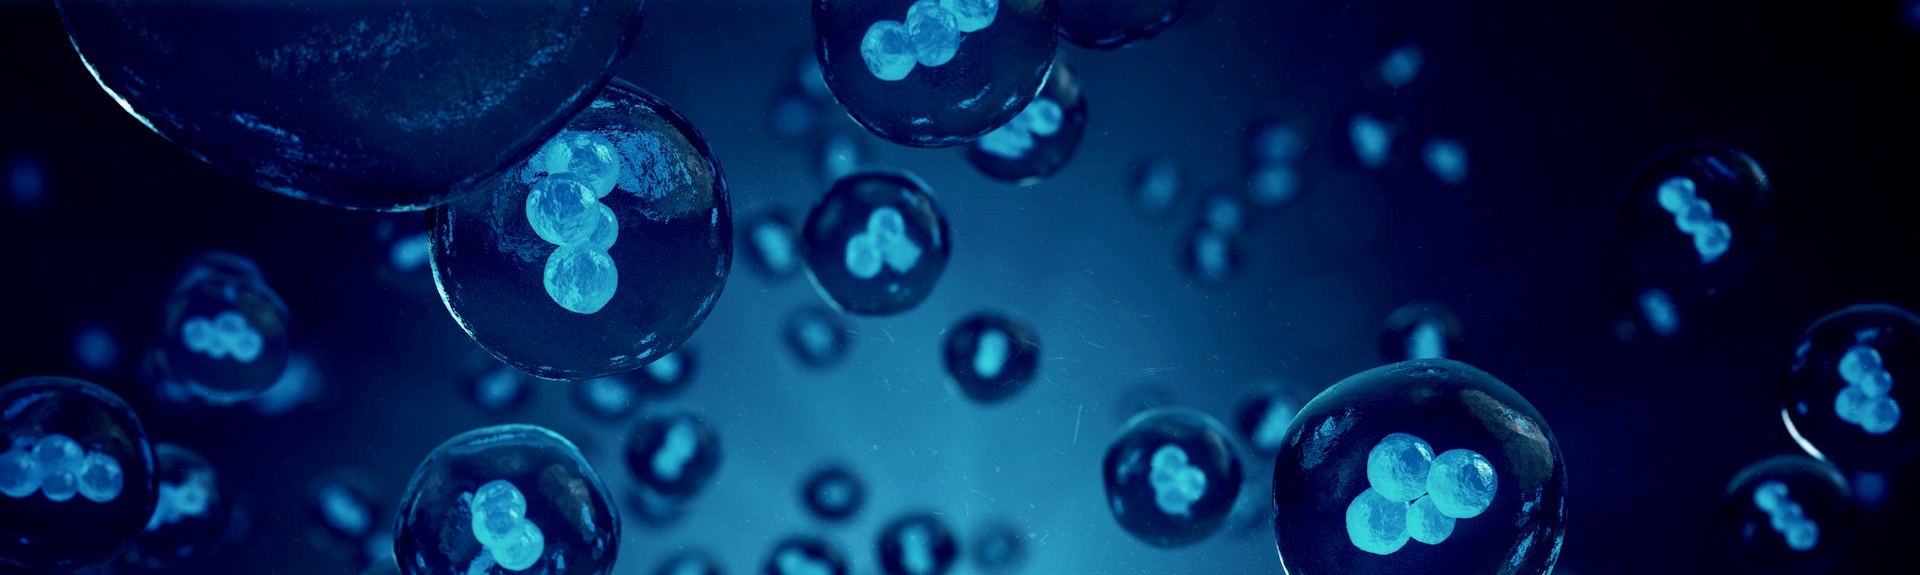 Illustration 3D de cellules humaines ou animales sur fond bleu